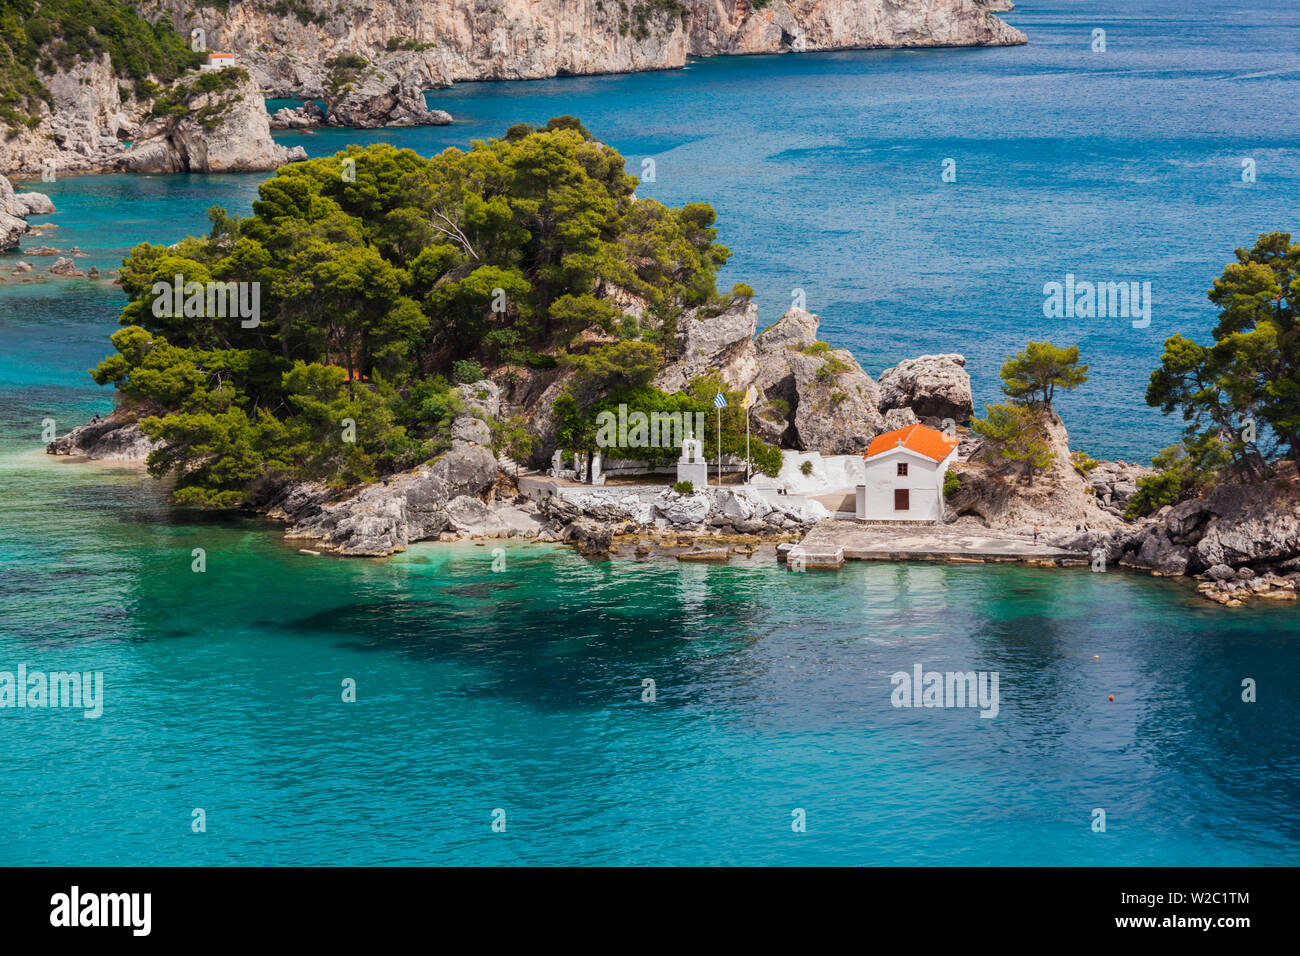 Greece, Epirus Region, Parga, elevated view of Panagias Island Stock Photo